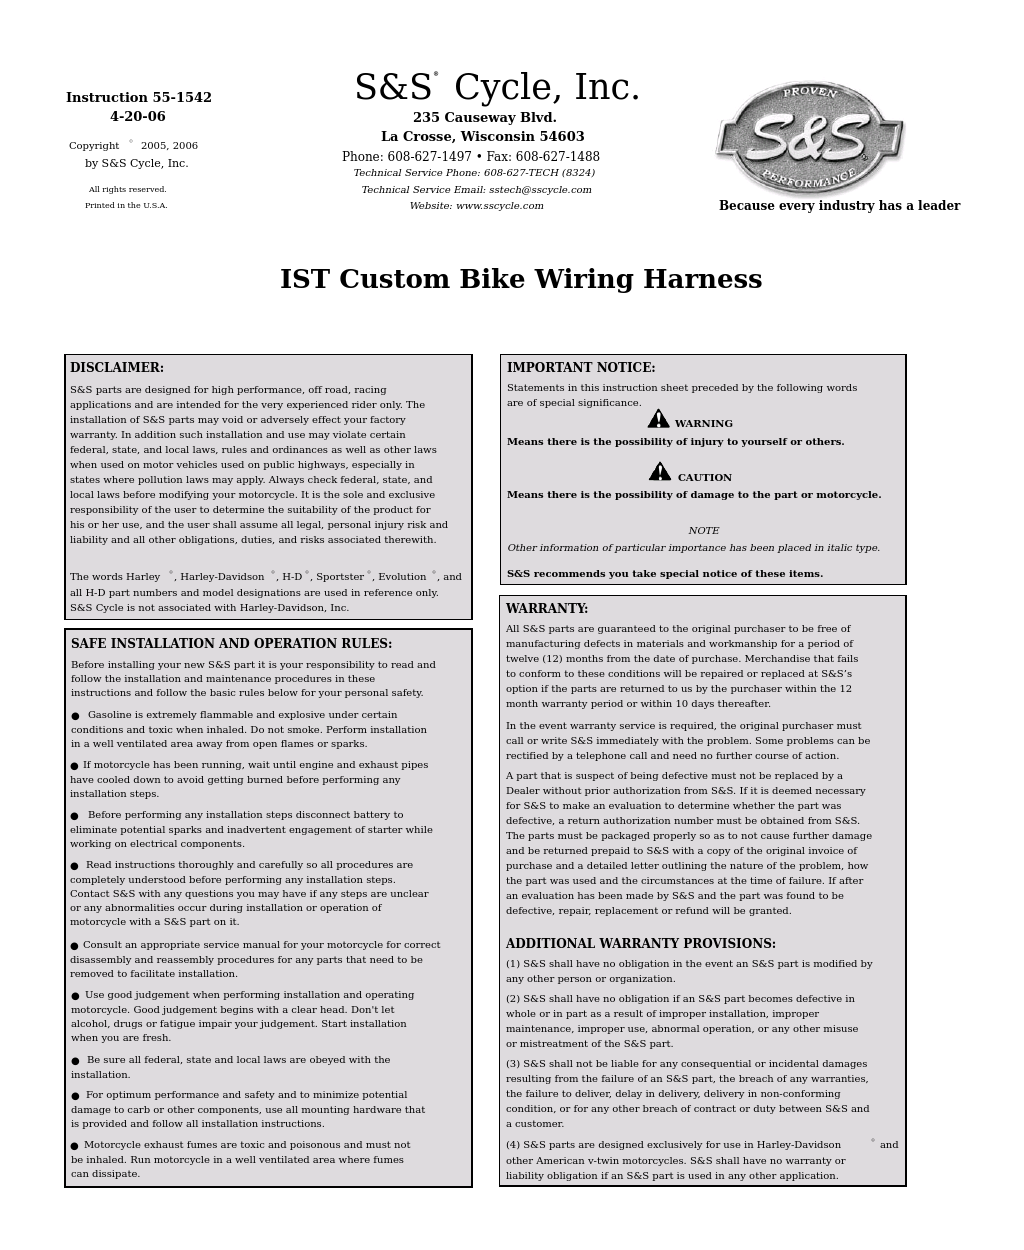 IST Custom Bike Wiring Harness